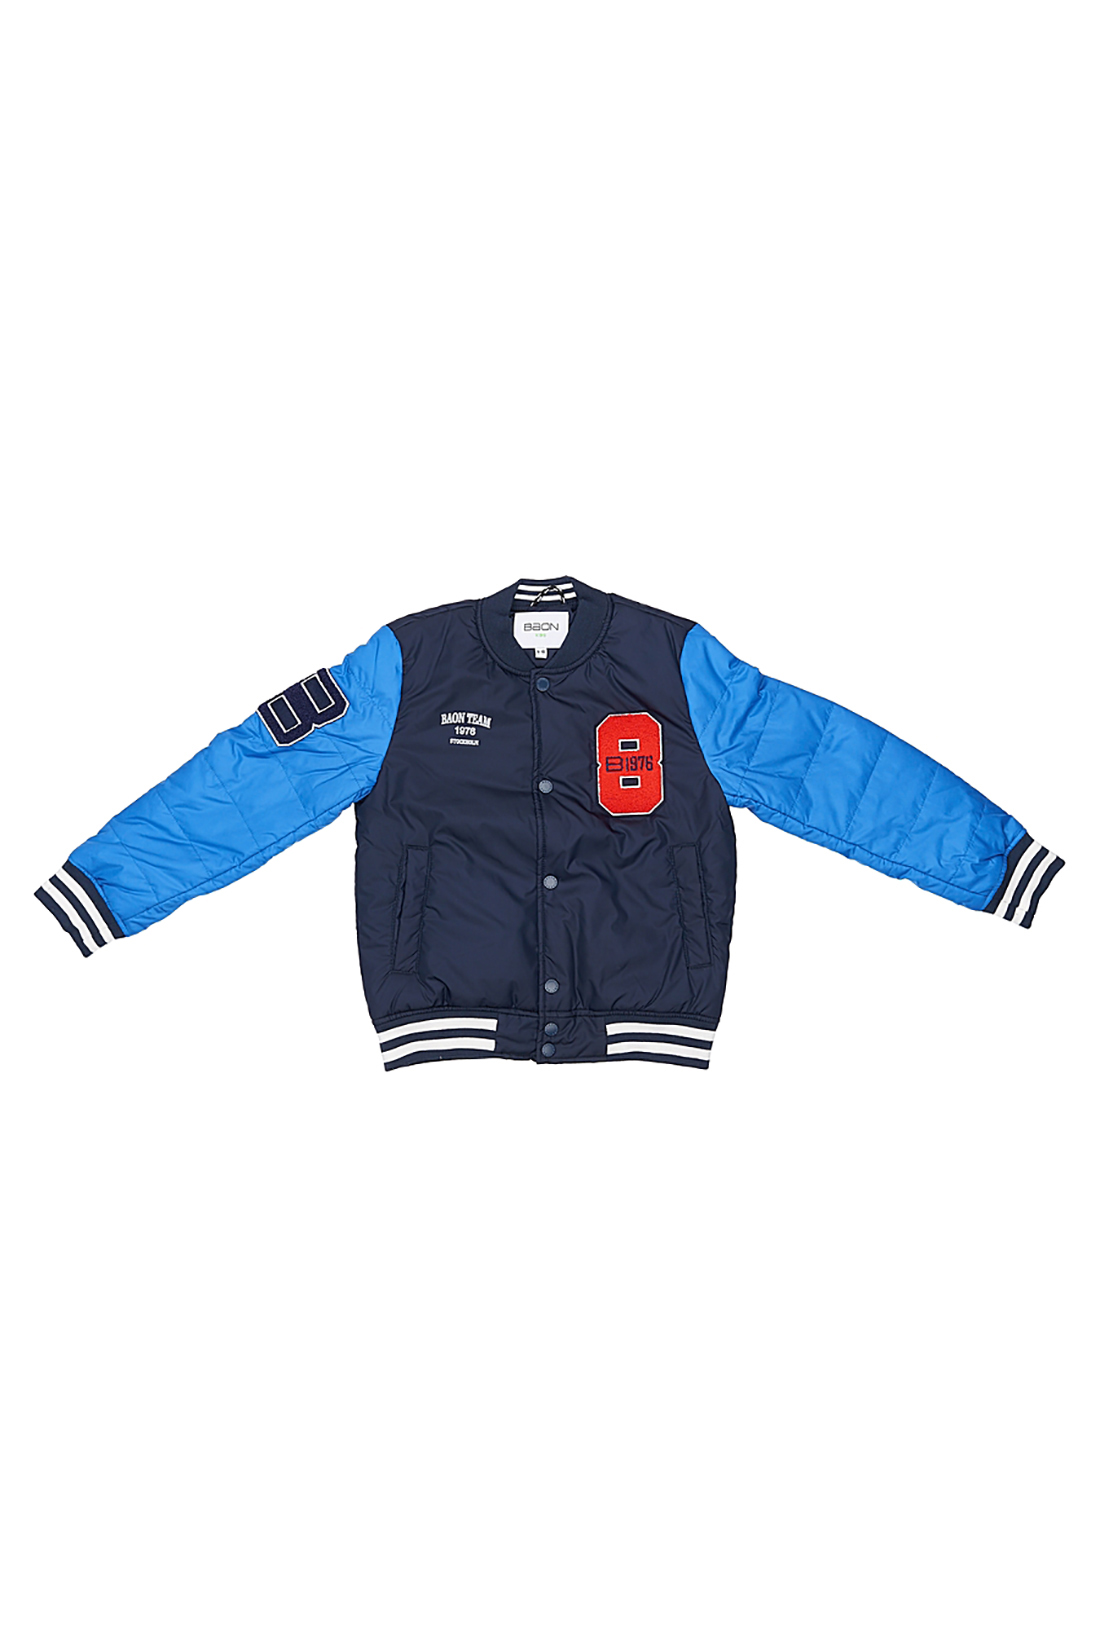 Куртка для мальчика (арт. baon BJ538003), размер 146-152, цвет синий Куртка для мальчика (арт. baon BJ538003) - фото 4